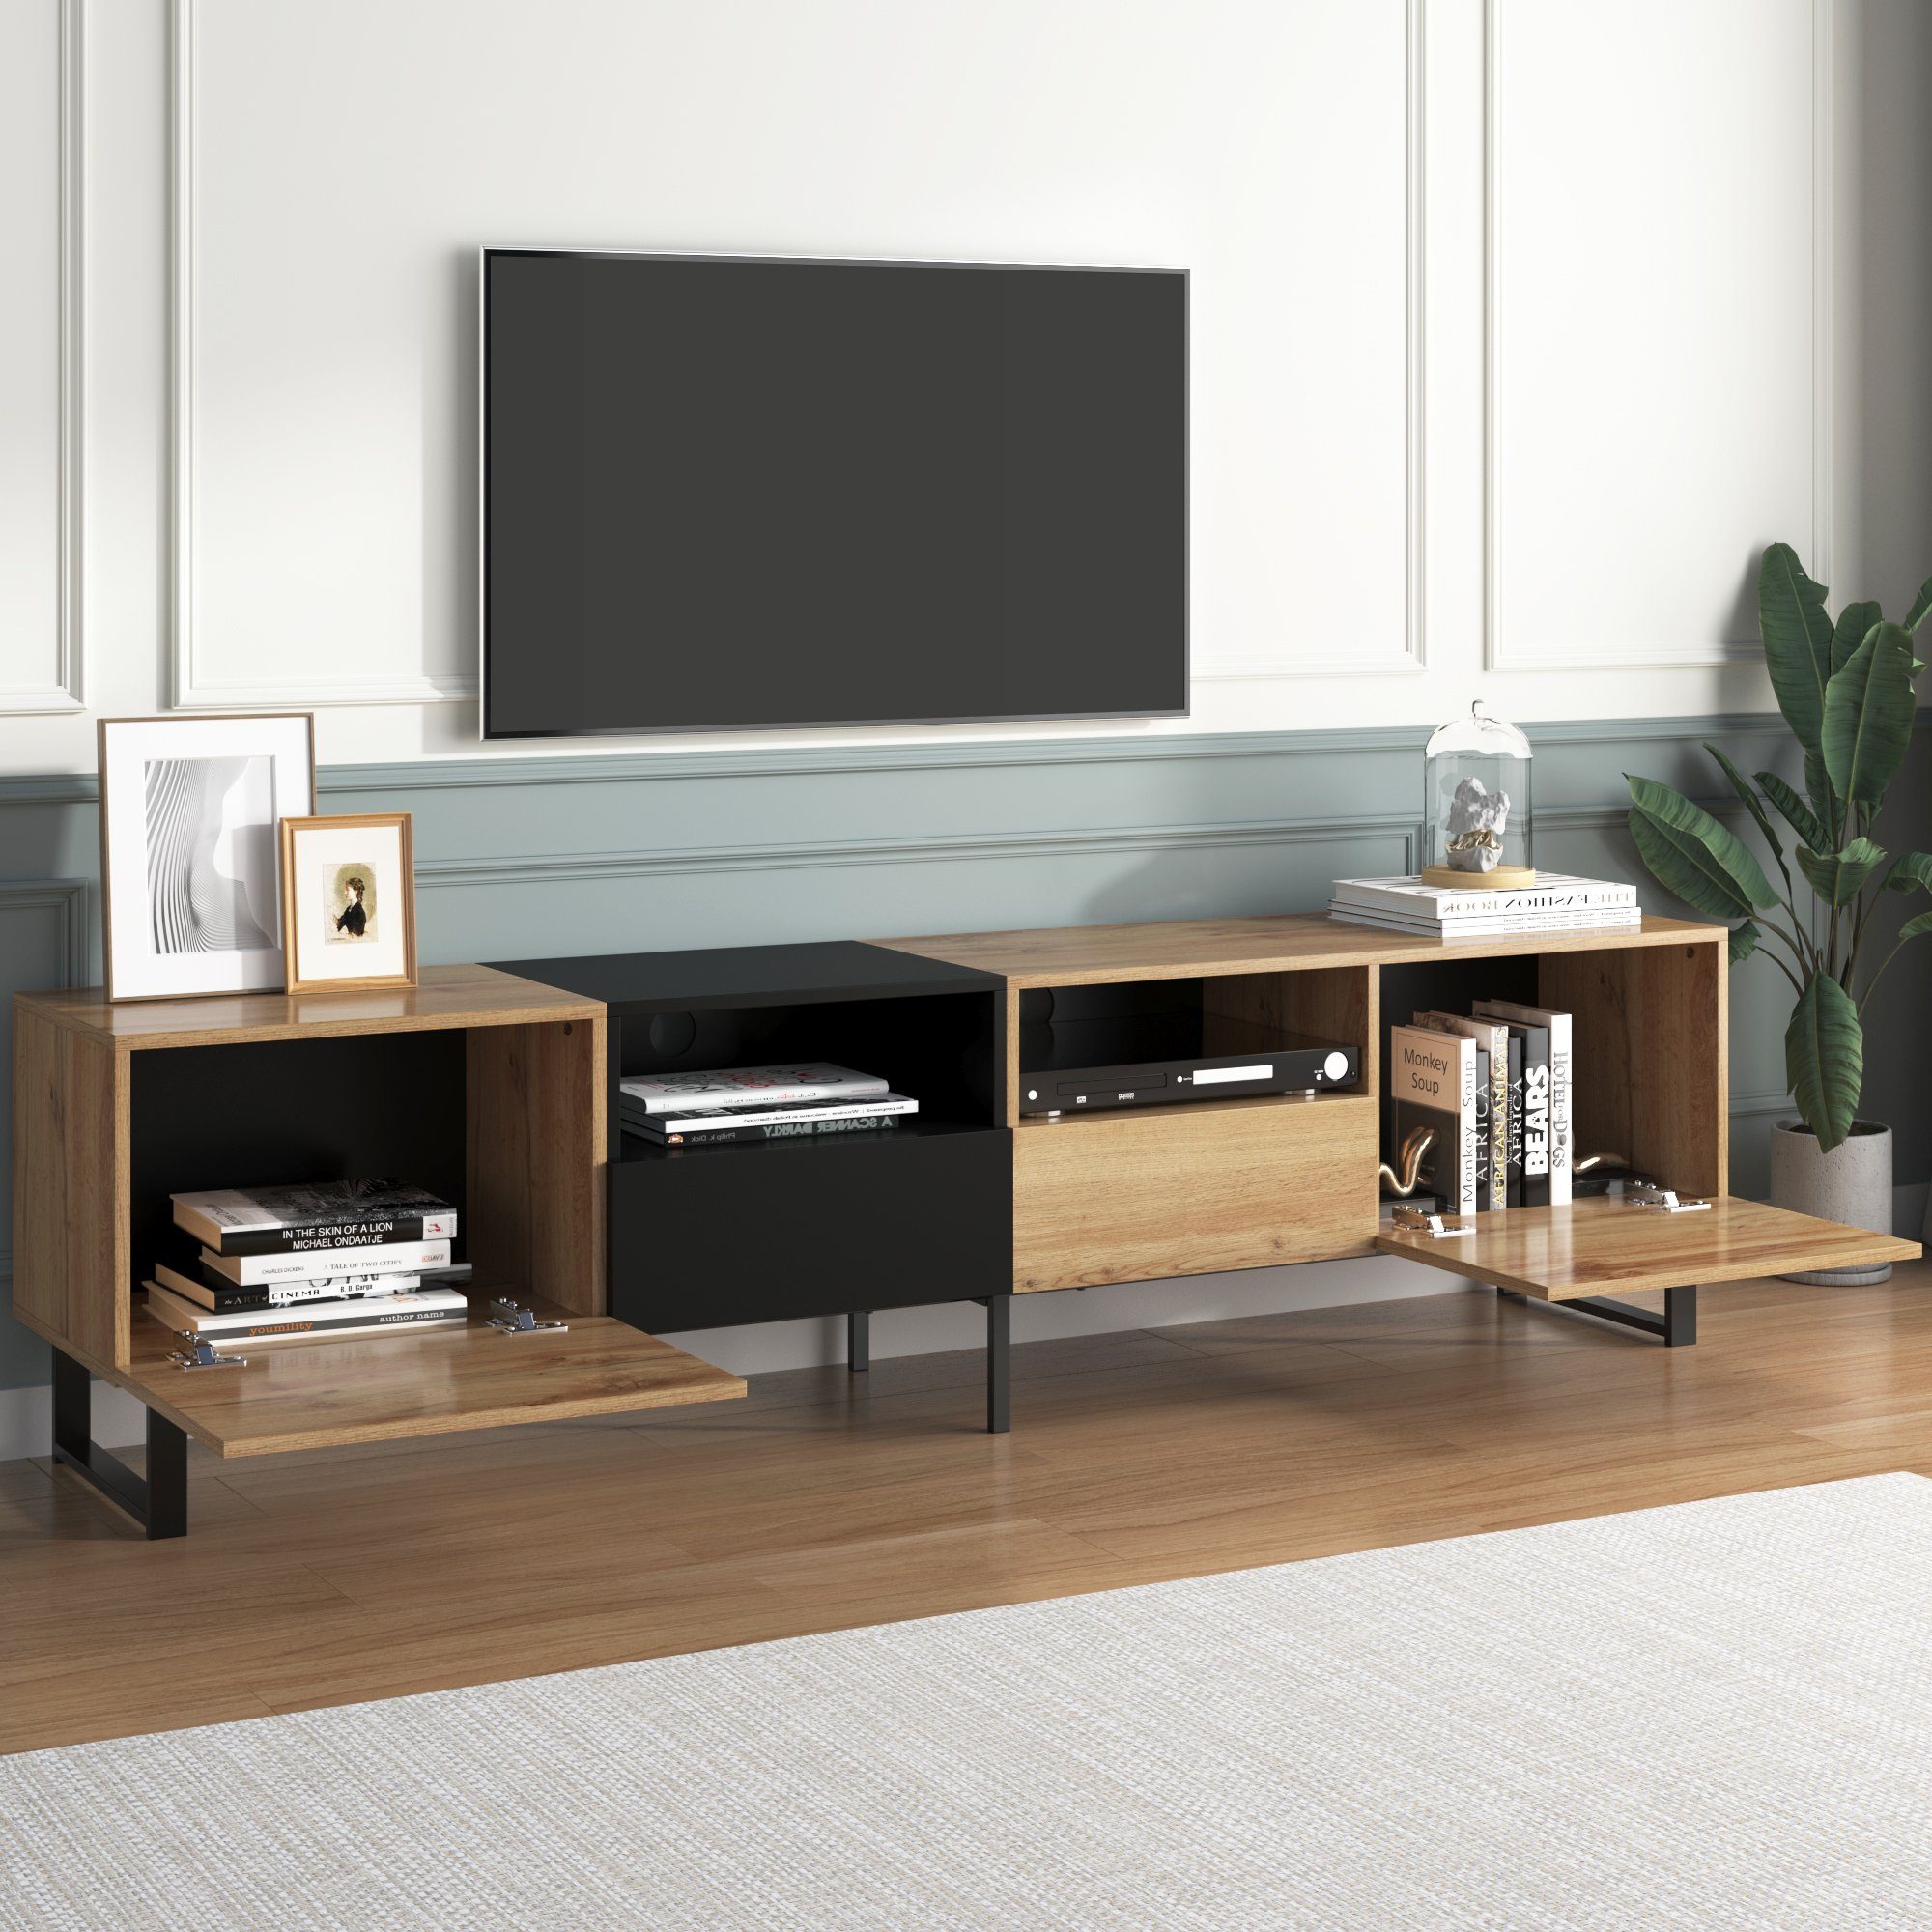 OKWISH TV-Schrank Moderner TV-Ständer (190 cm x 38 cm x 48 cm, mit schwarzem und holzfarbenem Design) geräumiger Stauraum, robuste Konstruktion